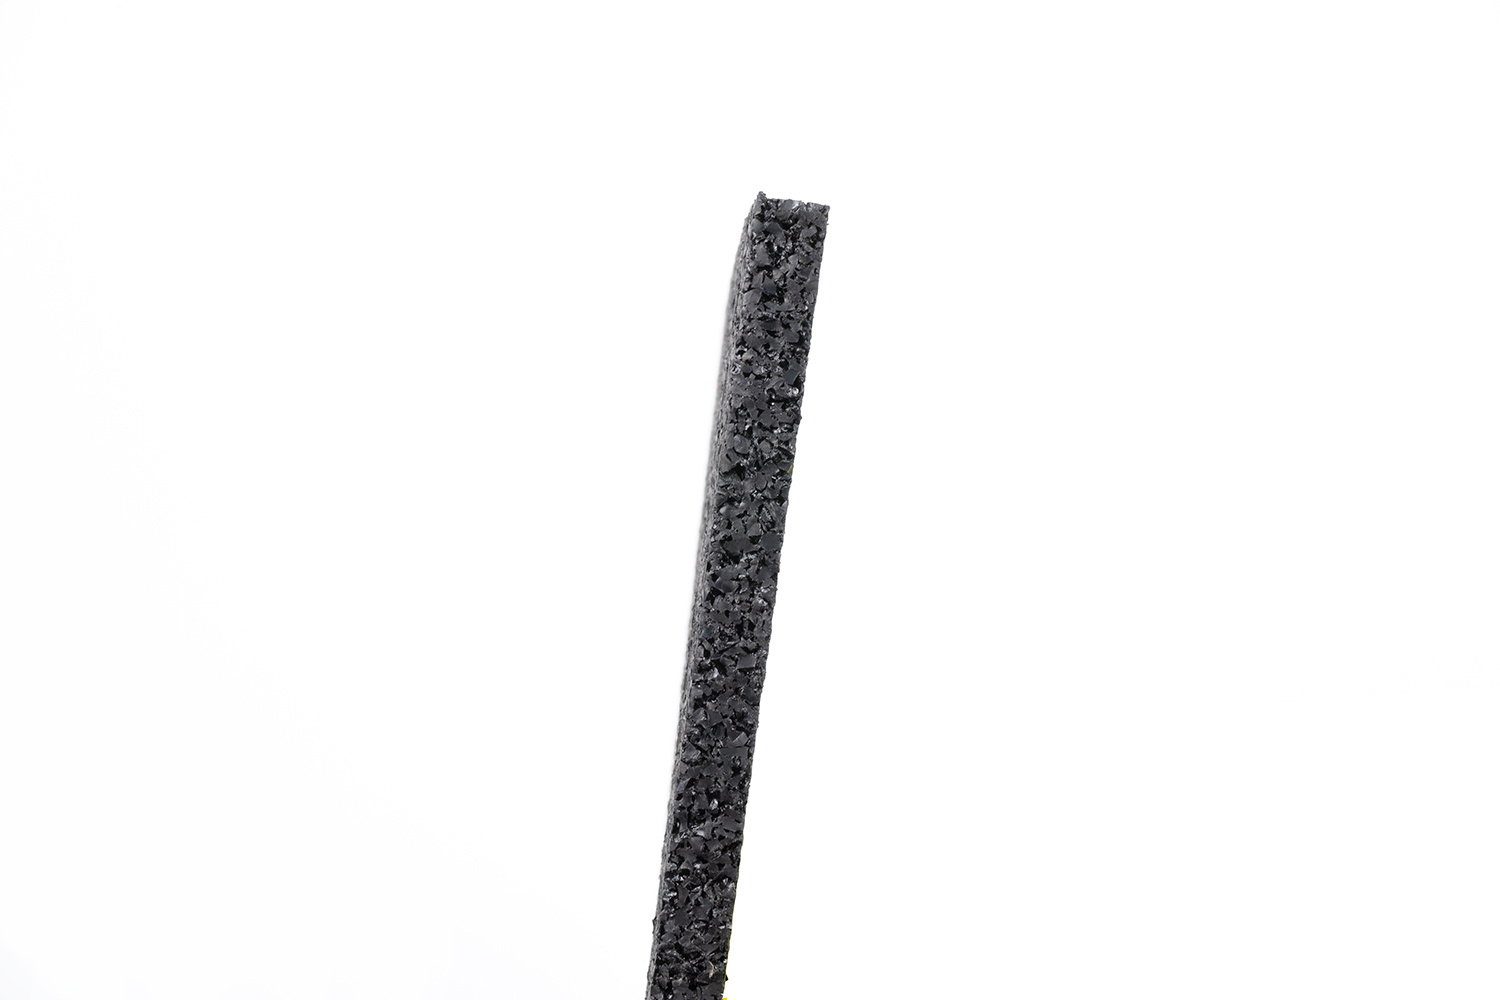 Bautenschutzmatte Gummigranulat 8mm 5m2, € 25,- (8181 Mitterdorf